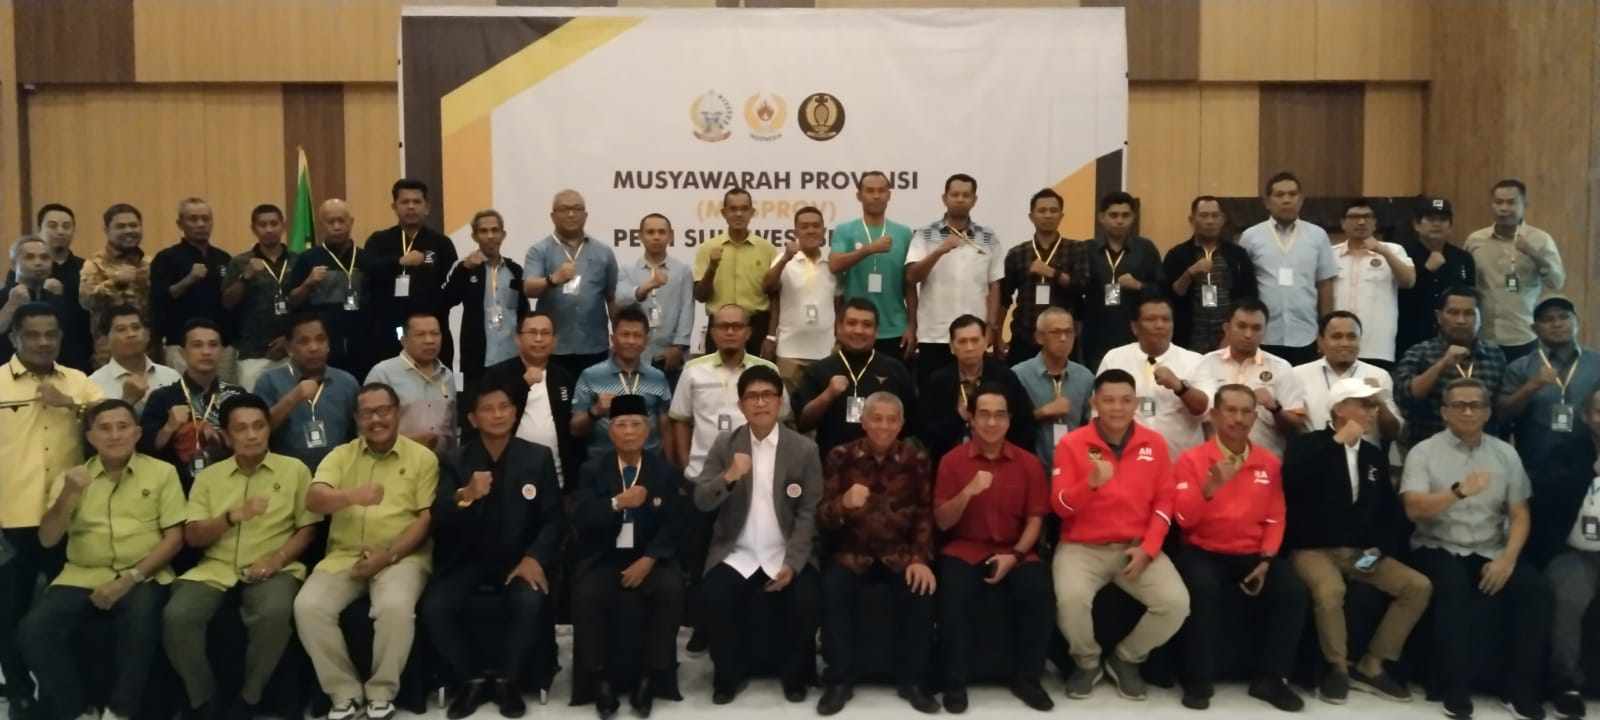 Musda Pengprov Pelti Sulsel di Makassar. (Rakyat.news/Aswar)